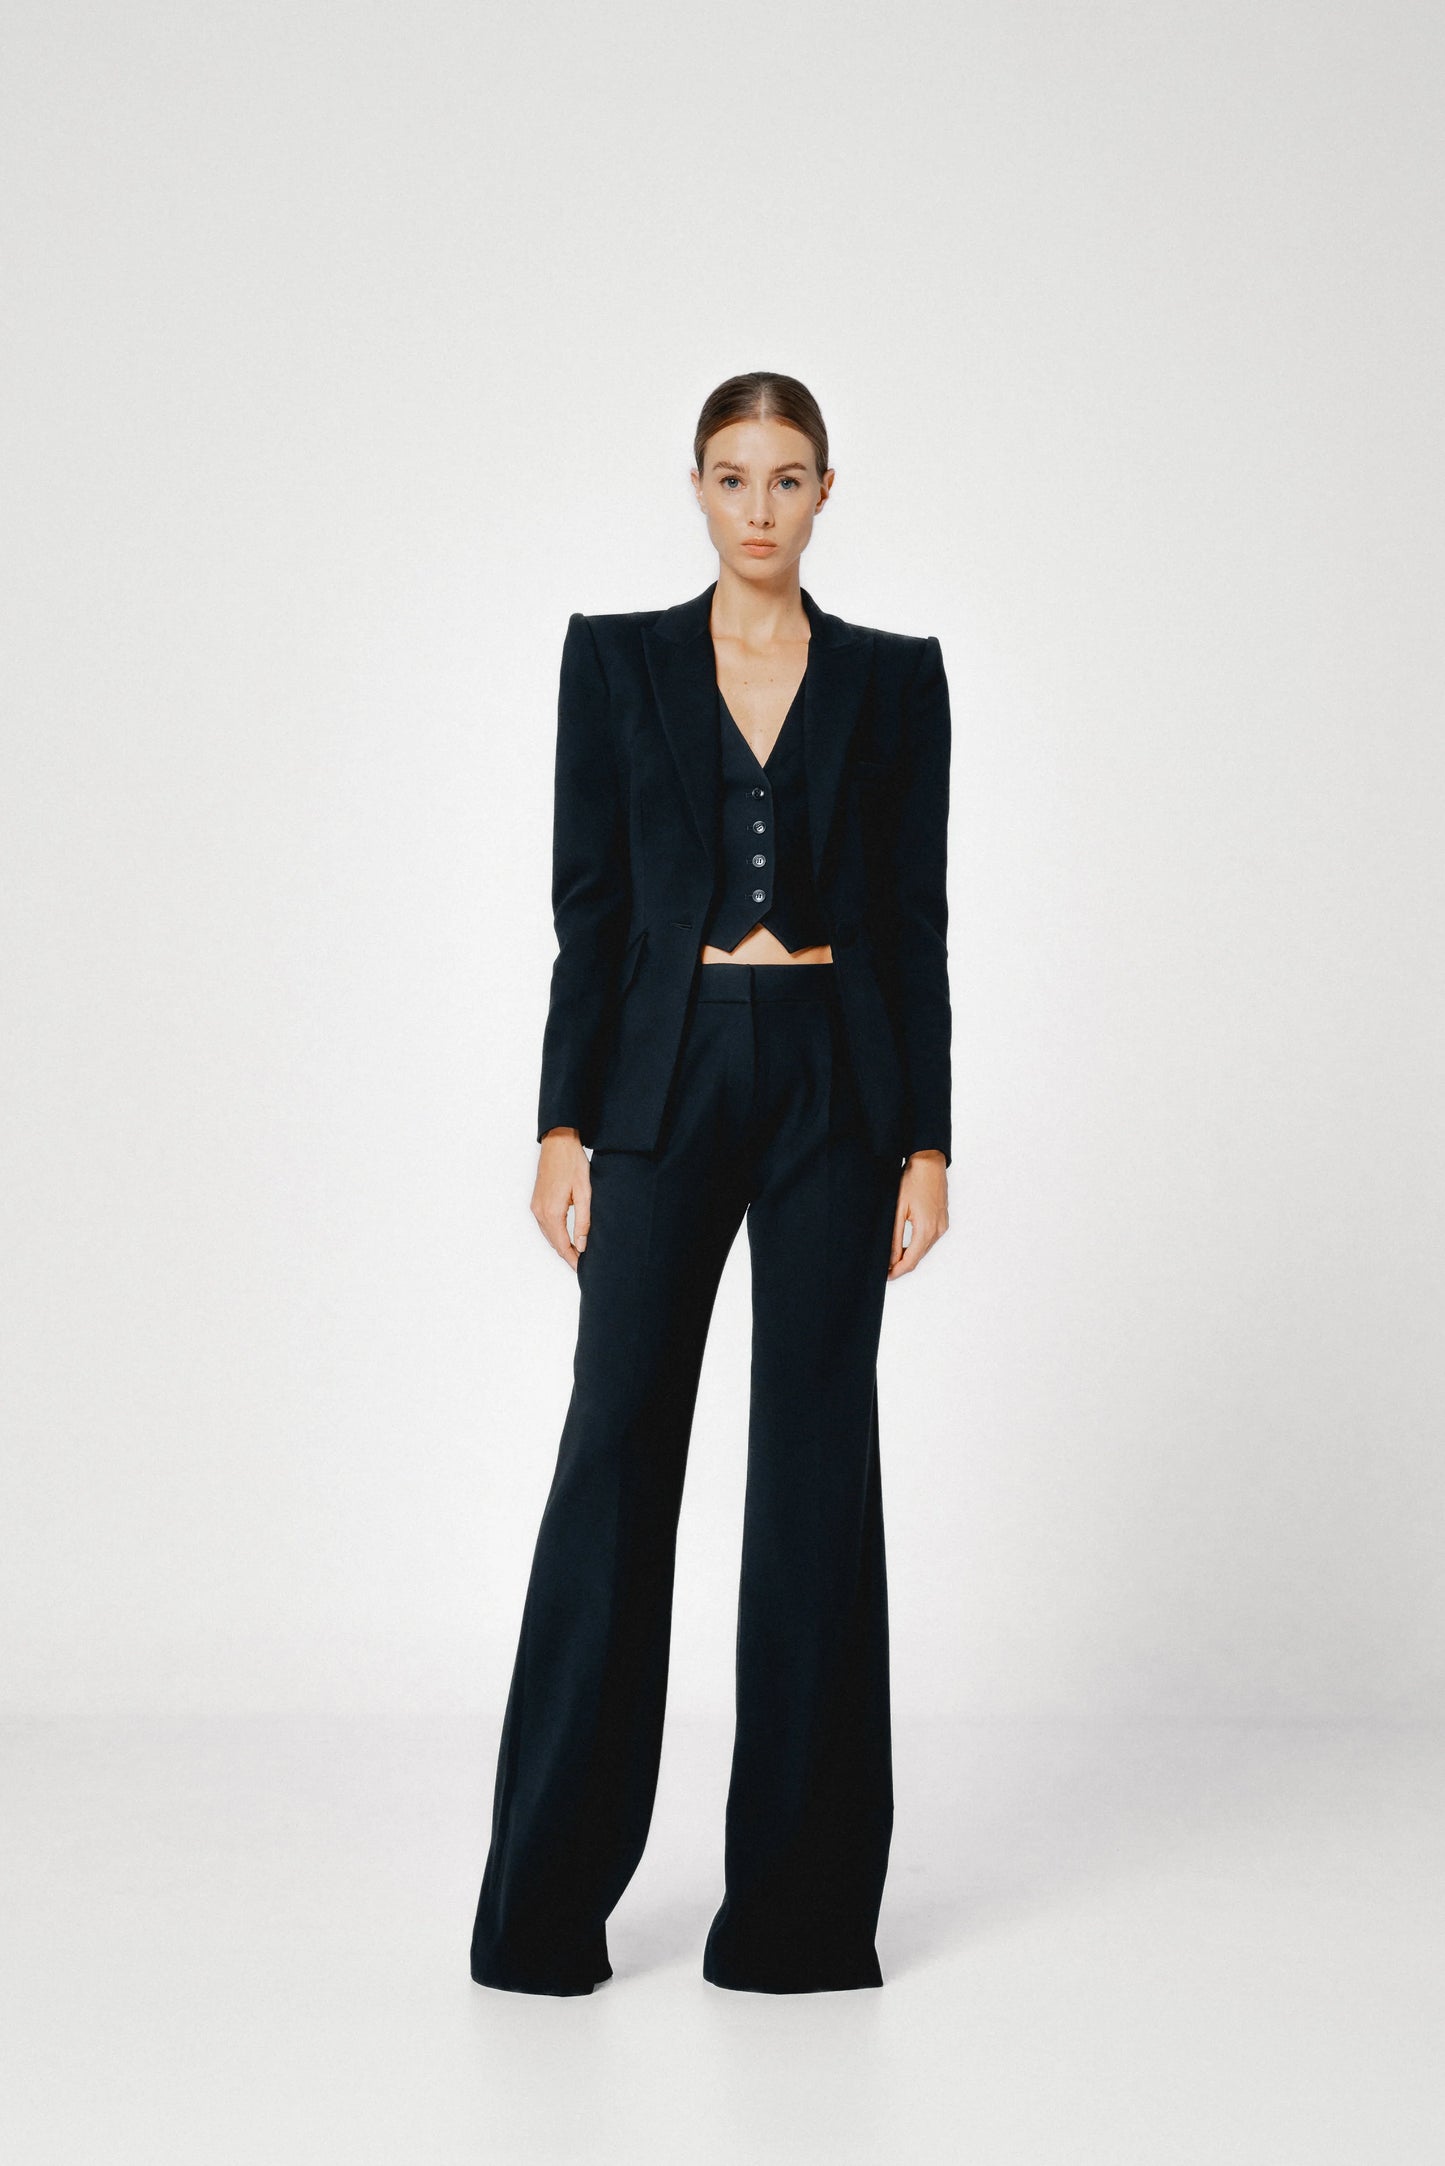 SANS FAFF Sloan Structured Blazer, tailored blazer, blazer, women's clothing